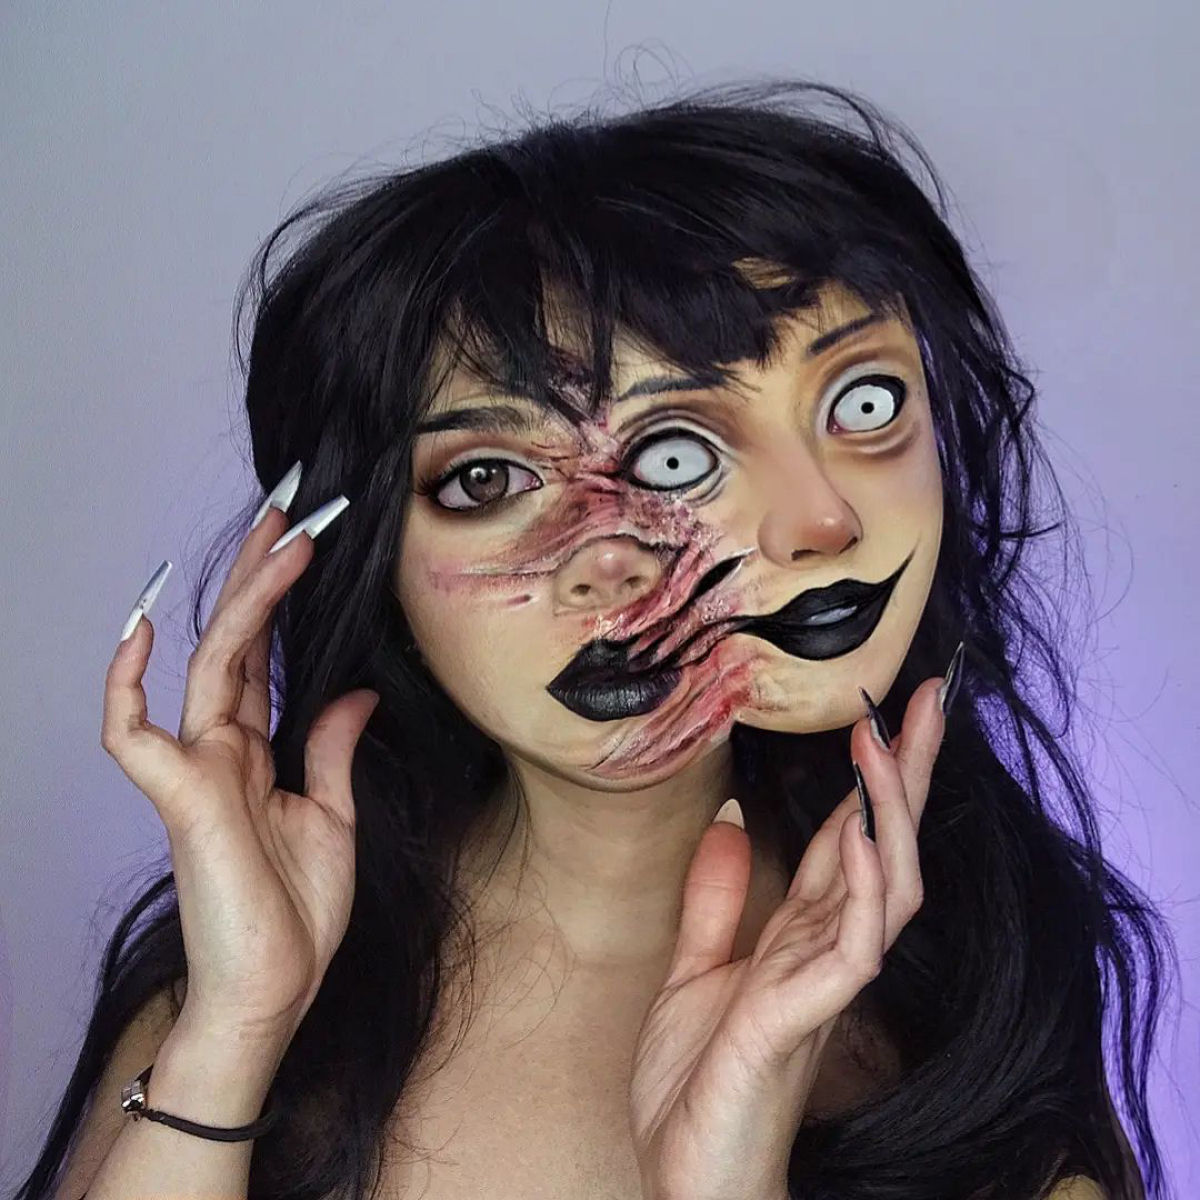 Artista usa seu próprio rosto como tela para ilusões surrealistas 04